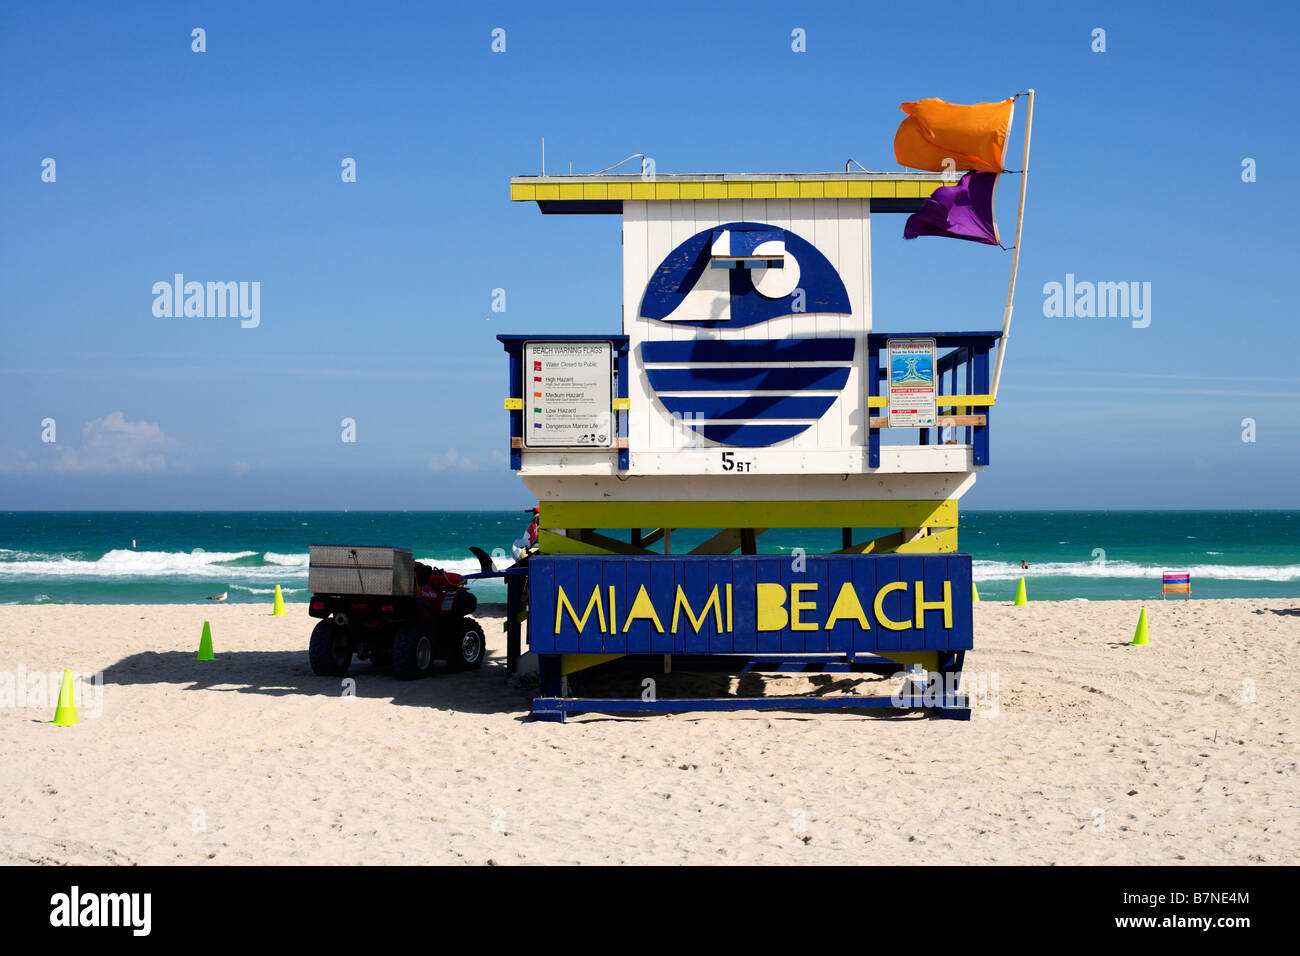 A lifeguard station on Miami Beach, Florida. Stock Photo